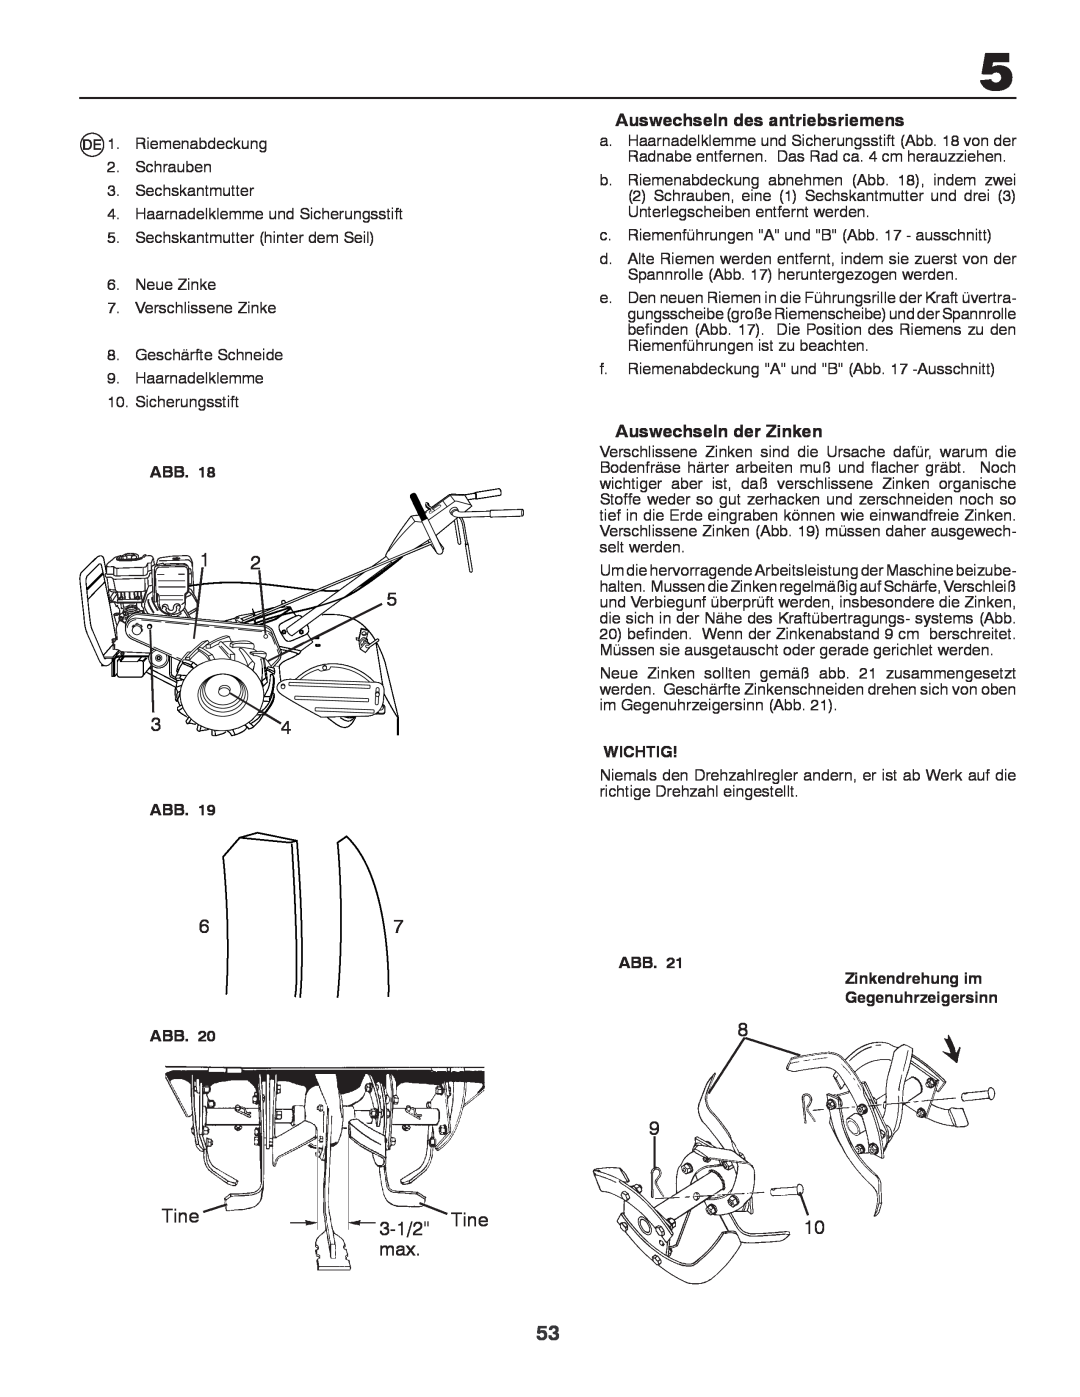 Husqvarna CRT81 instruction manual 3-1/2 Tine, Auswechseln des antriebsriemens, Auswechseln der Zinken, Wichtig 